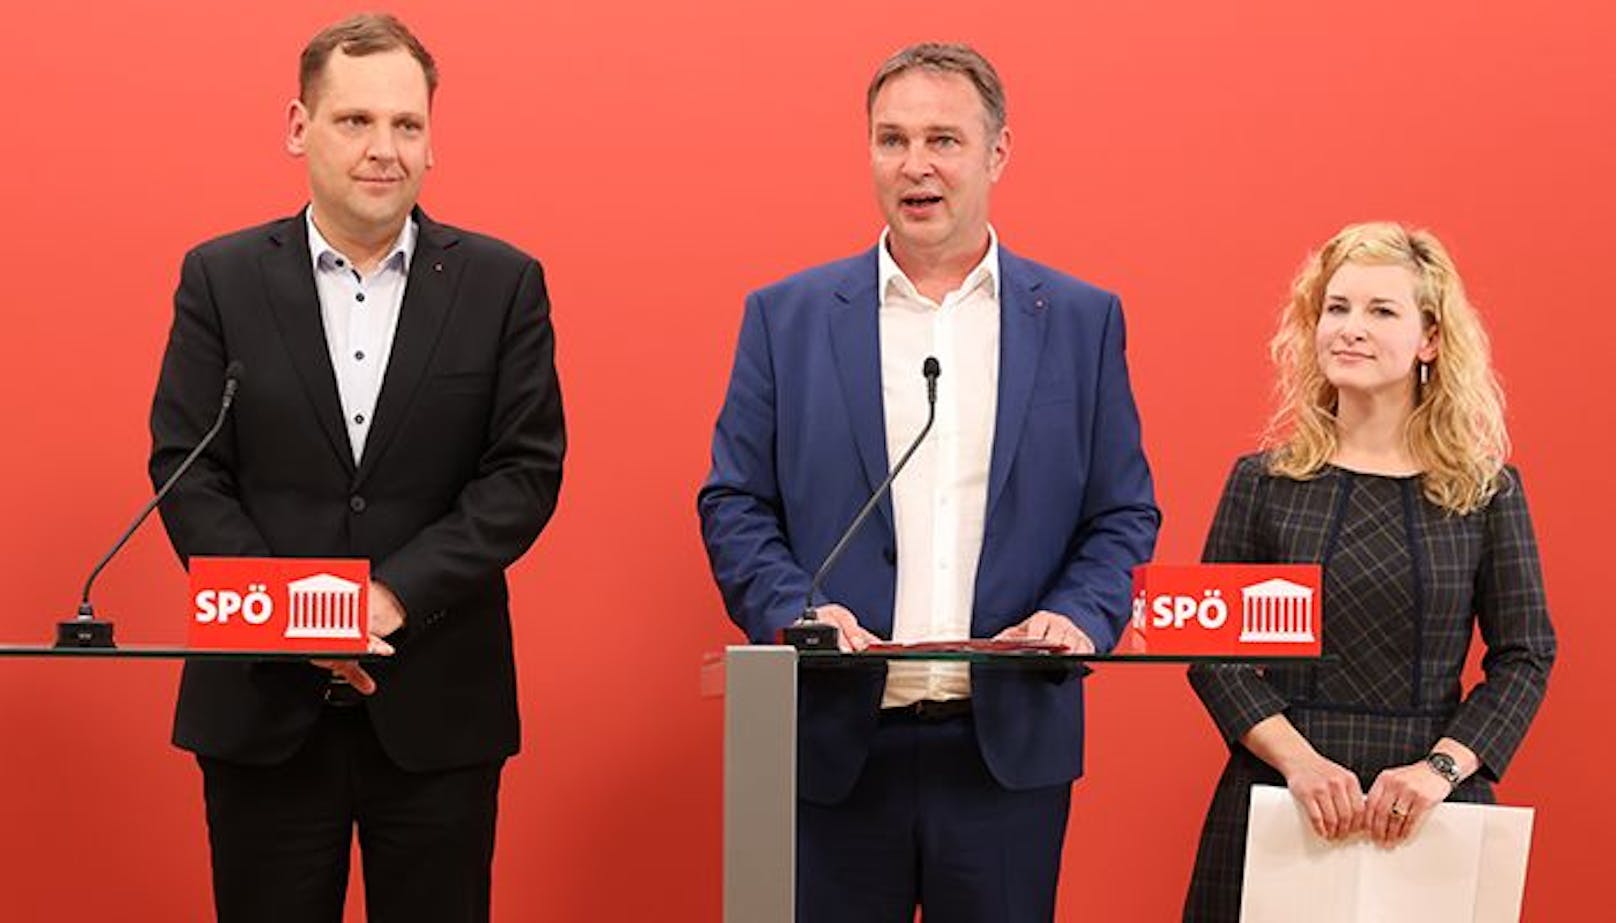 Streit um Cash! SPÖ will jetzt in jedem Ort Bankomaten